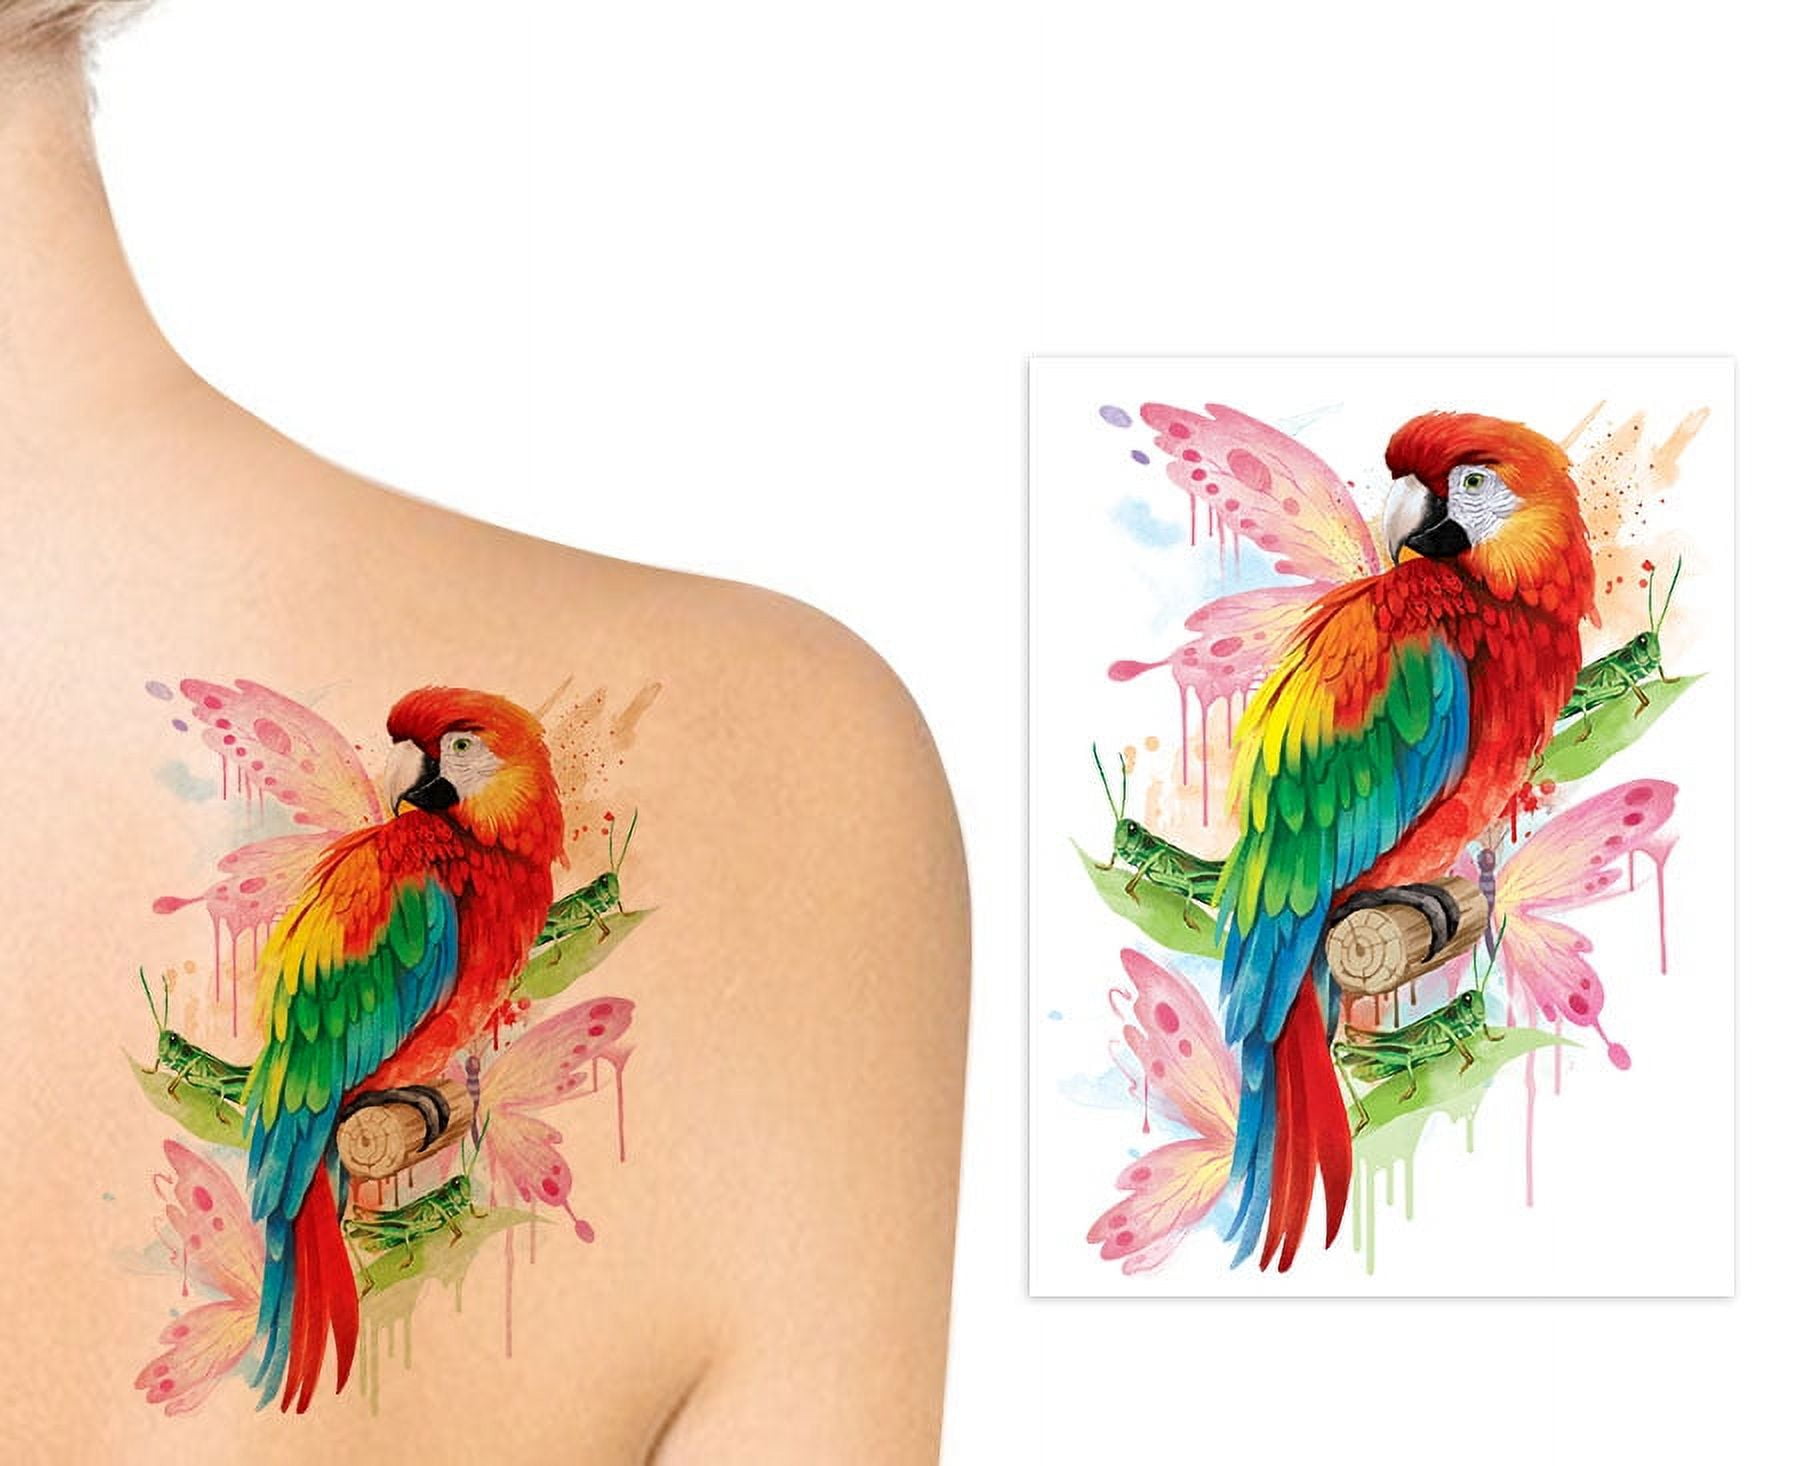 20 Swallow Bird Tattoo Design Ideas for Women - Mom's Got the Stuff |  Swallow tattoo, Swallow tattoo meaning, Swallow bird tattoos